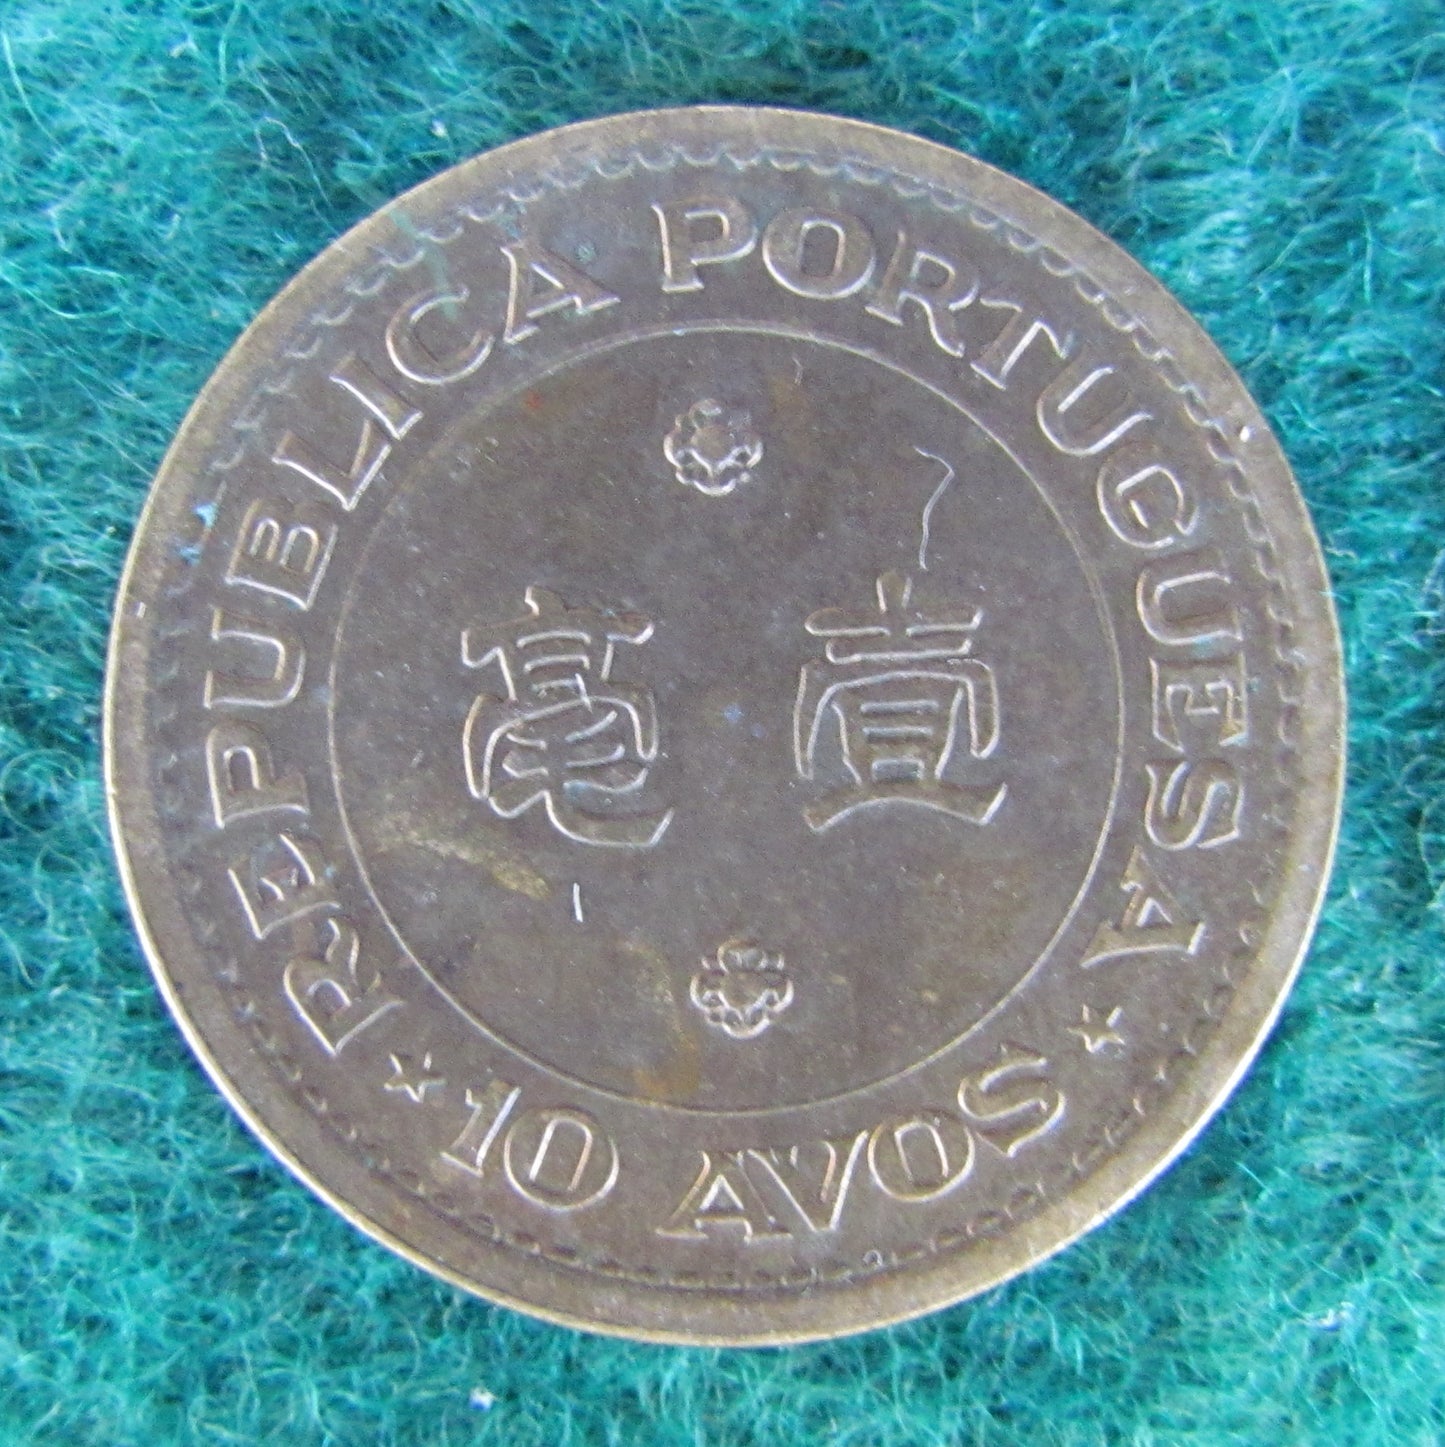 Macau Portuguese Republic 1968 10 Avos Coin - Circulated